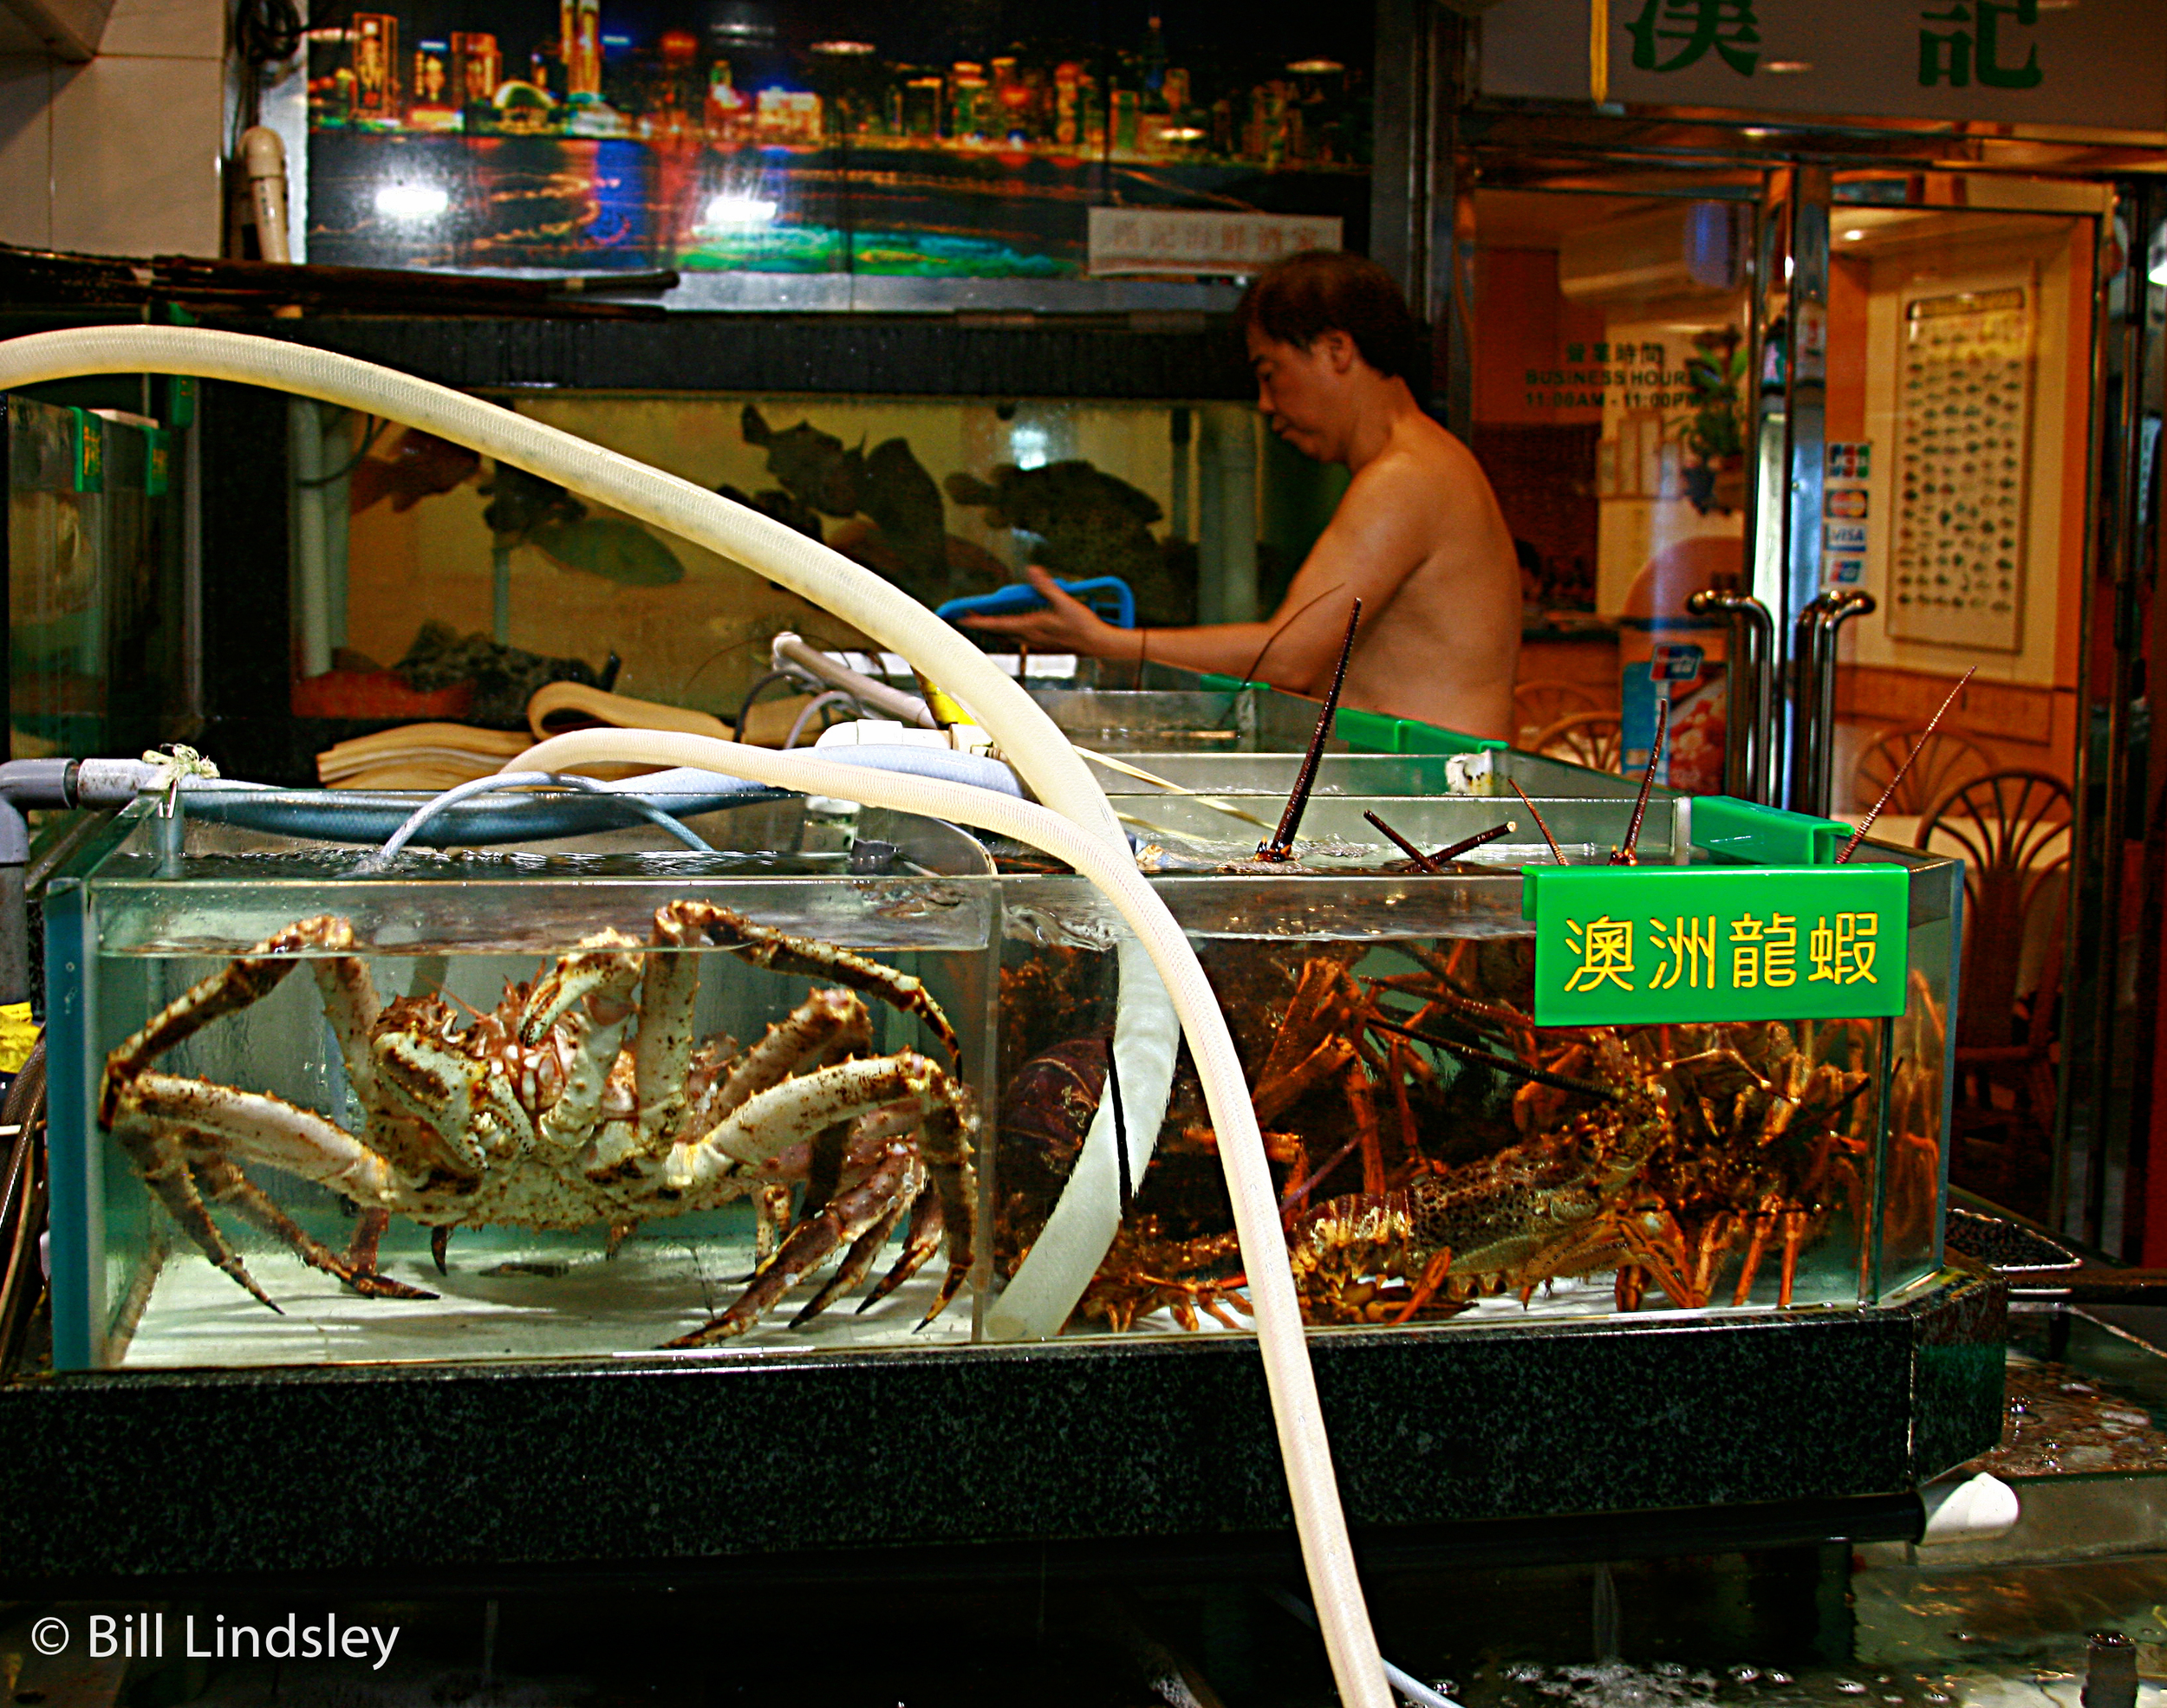  Fish Market, Hong Kong, China 